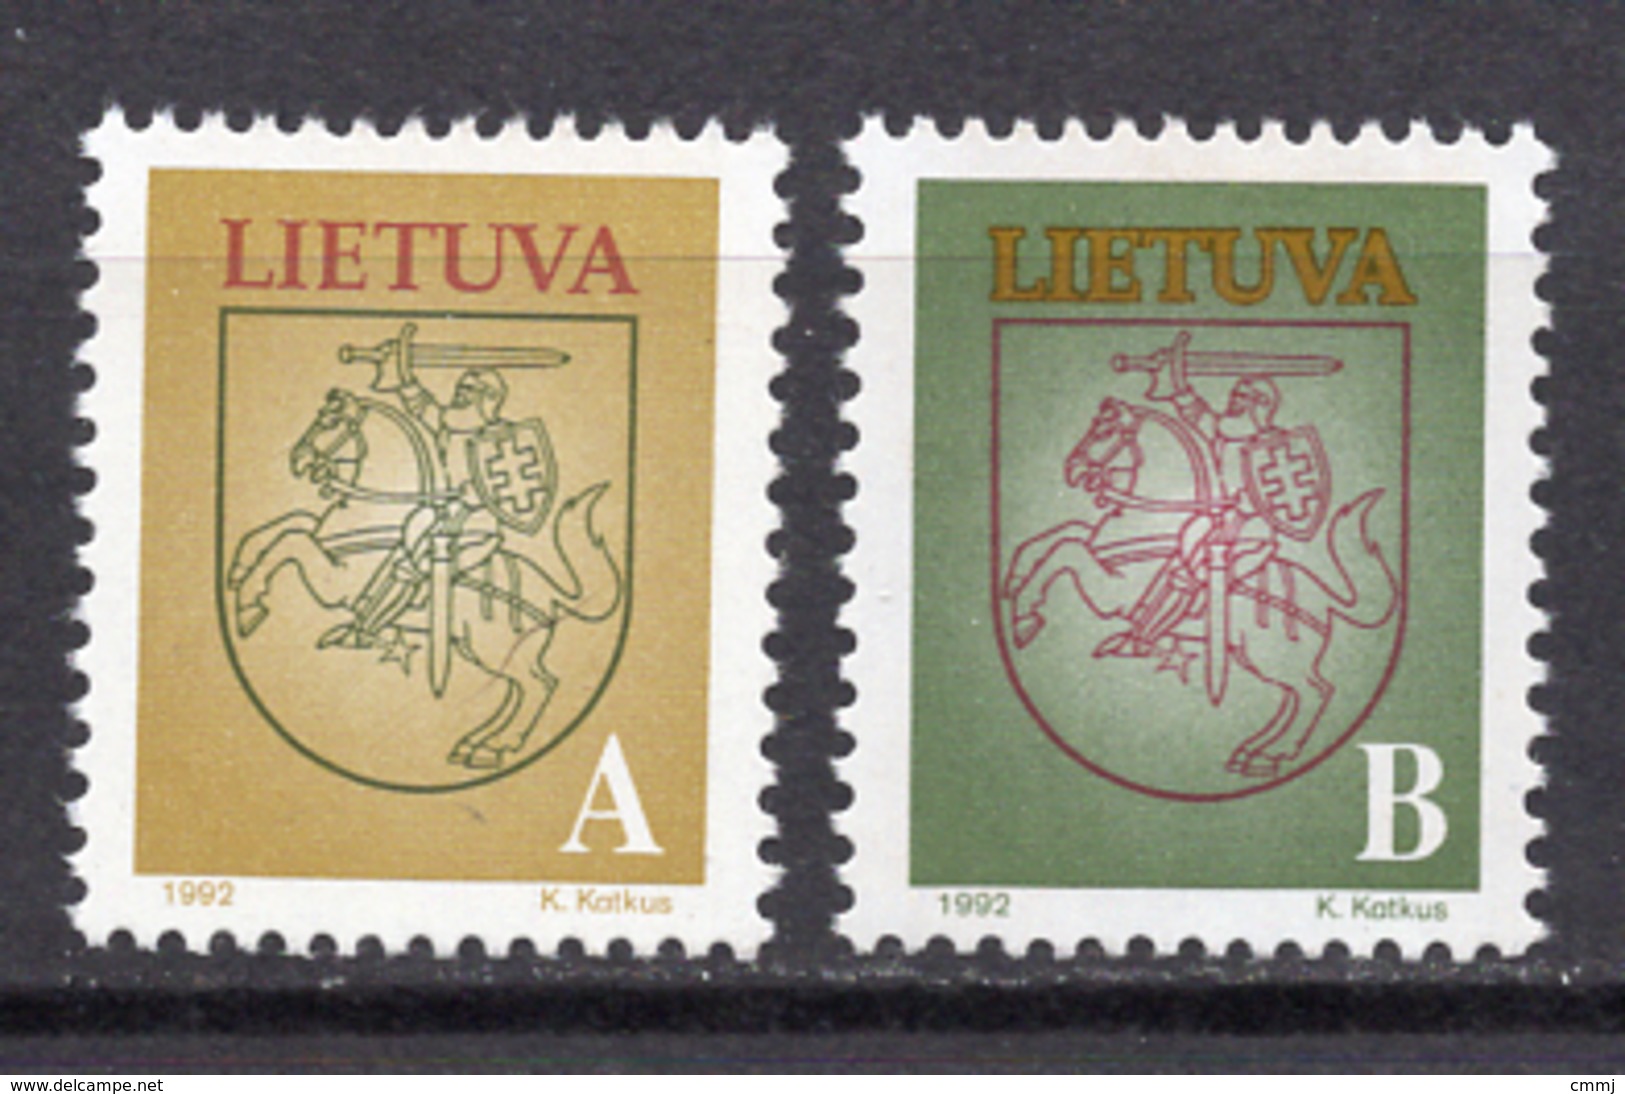 1993 - LITUANIA - LITHUANIA - LITUANIE - LITAUEN -  Mi. Nr. 531/532 - MINT - (0120.7) - Lithuania